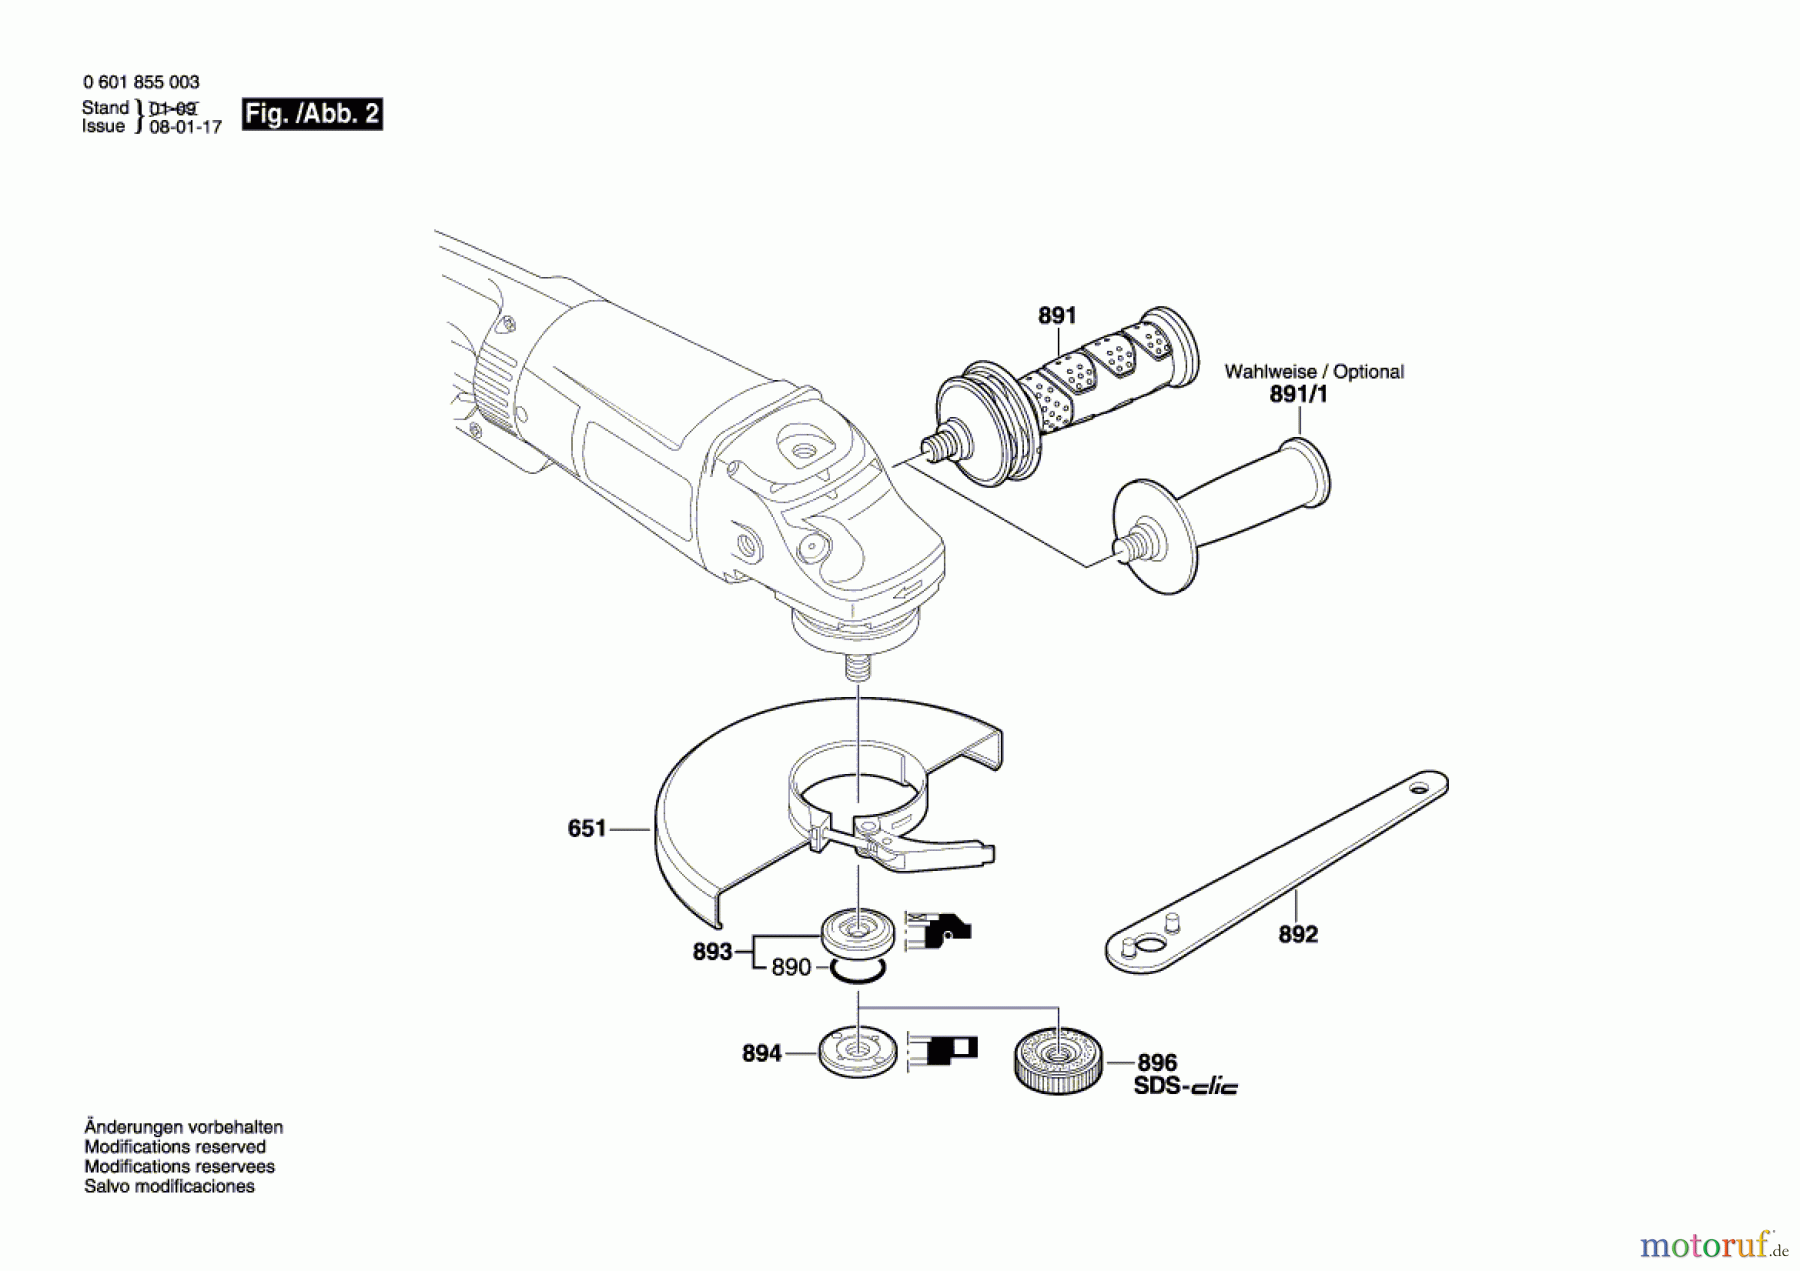  Bosch Werkzeug Winkelschleifer GWS 26-180 B Seite 2